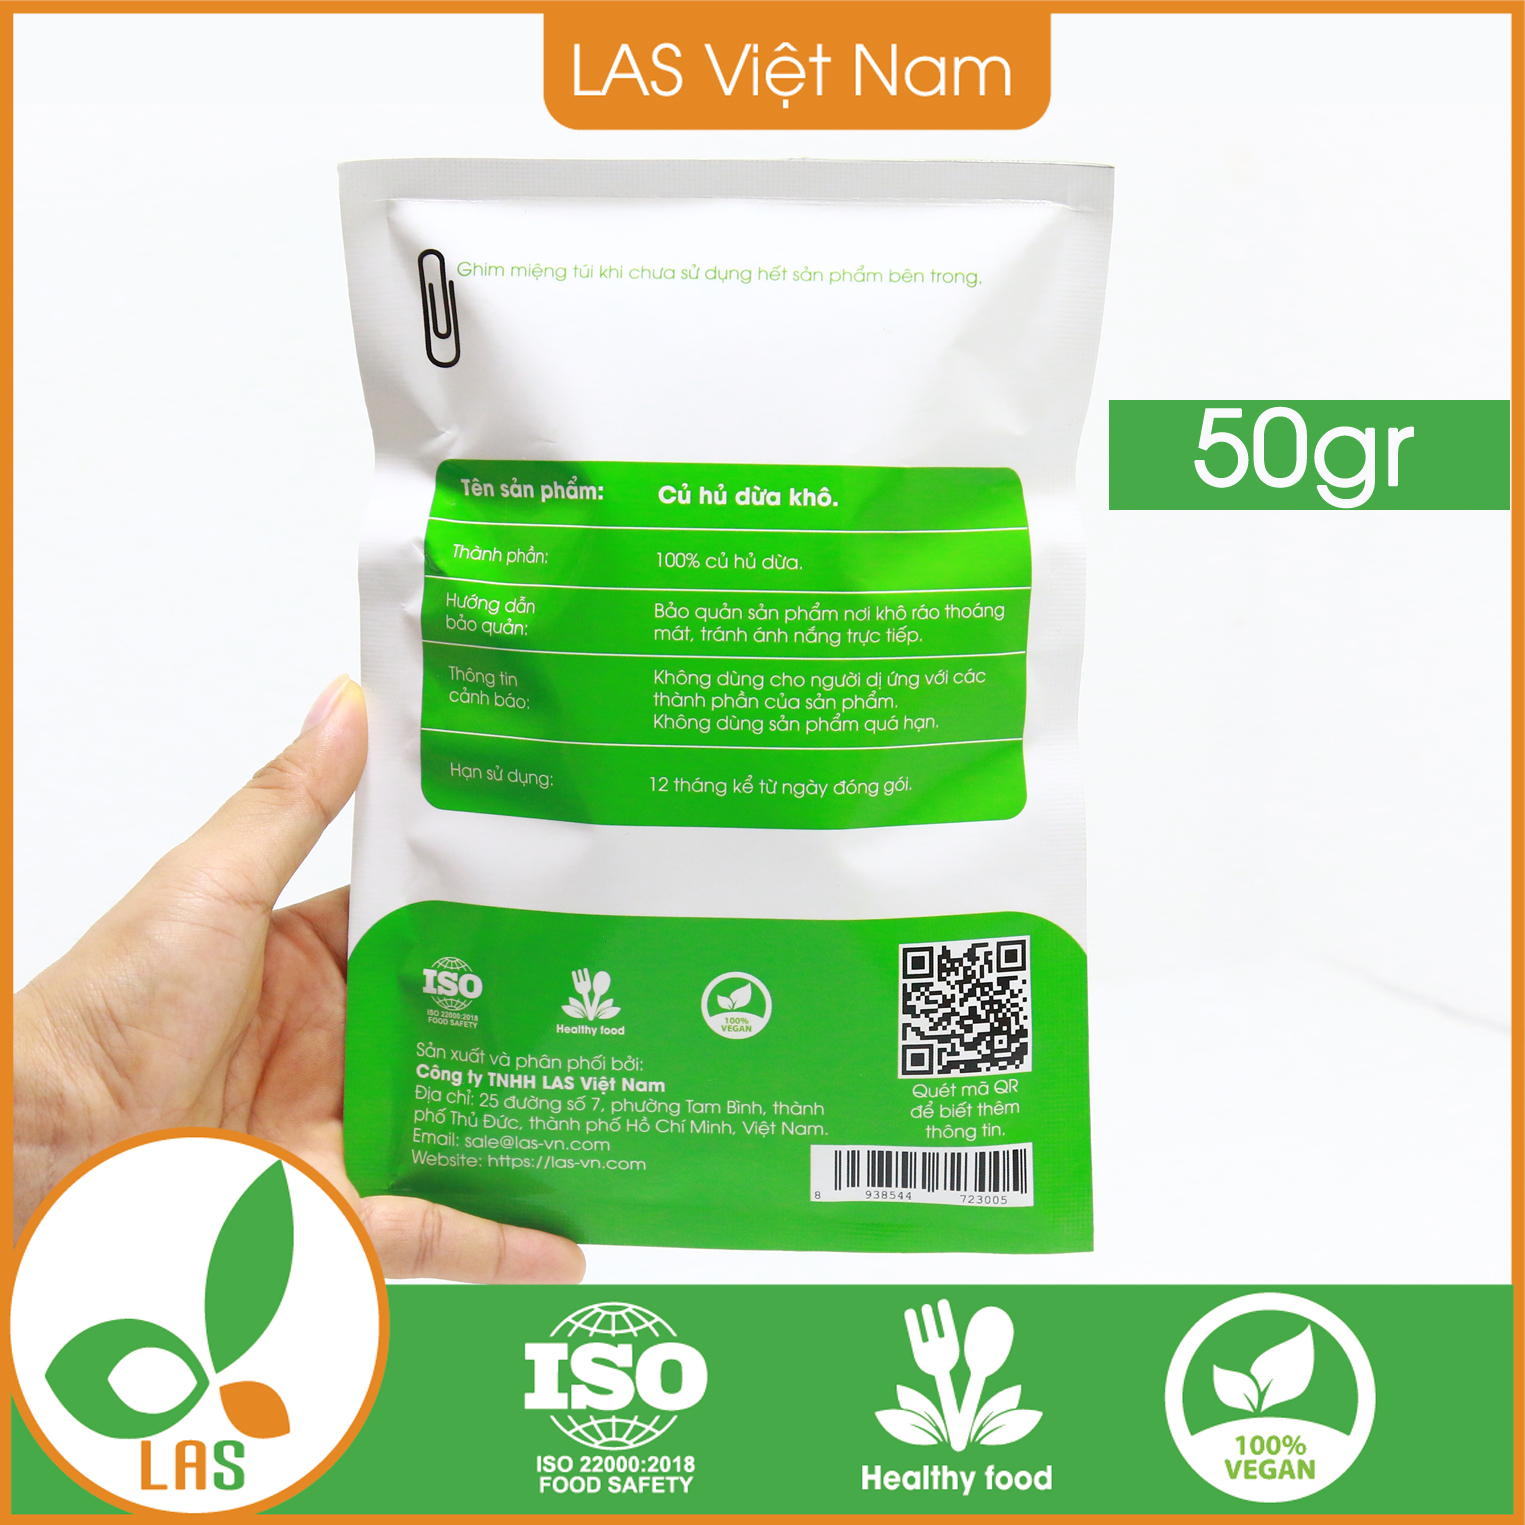 Củ hủ dừa khô - Gói 50gr | LAS Việt Nam